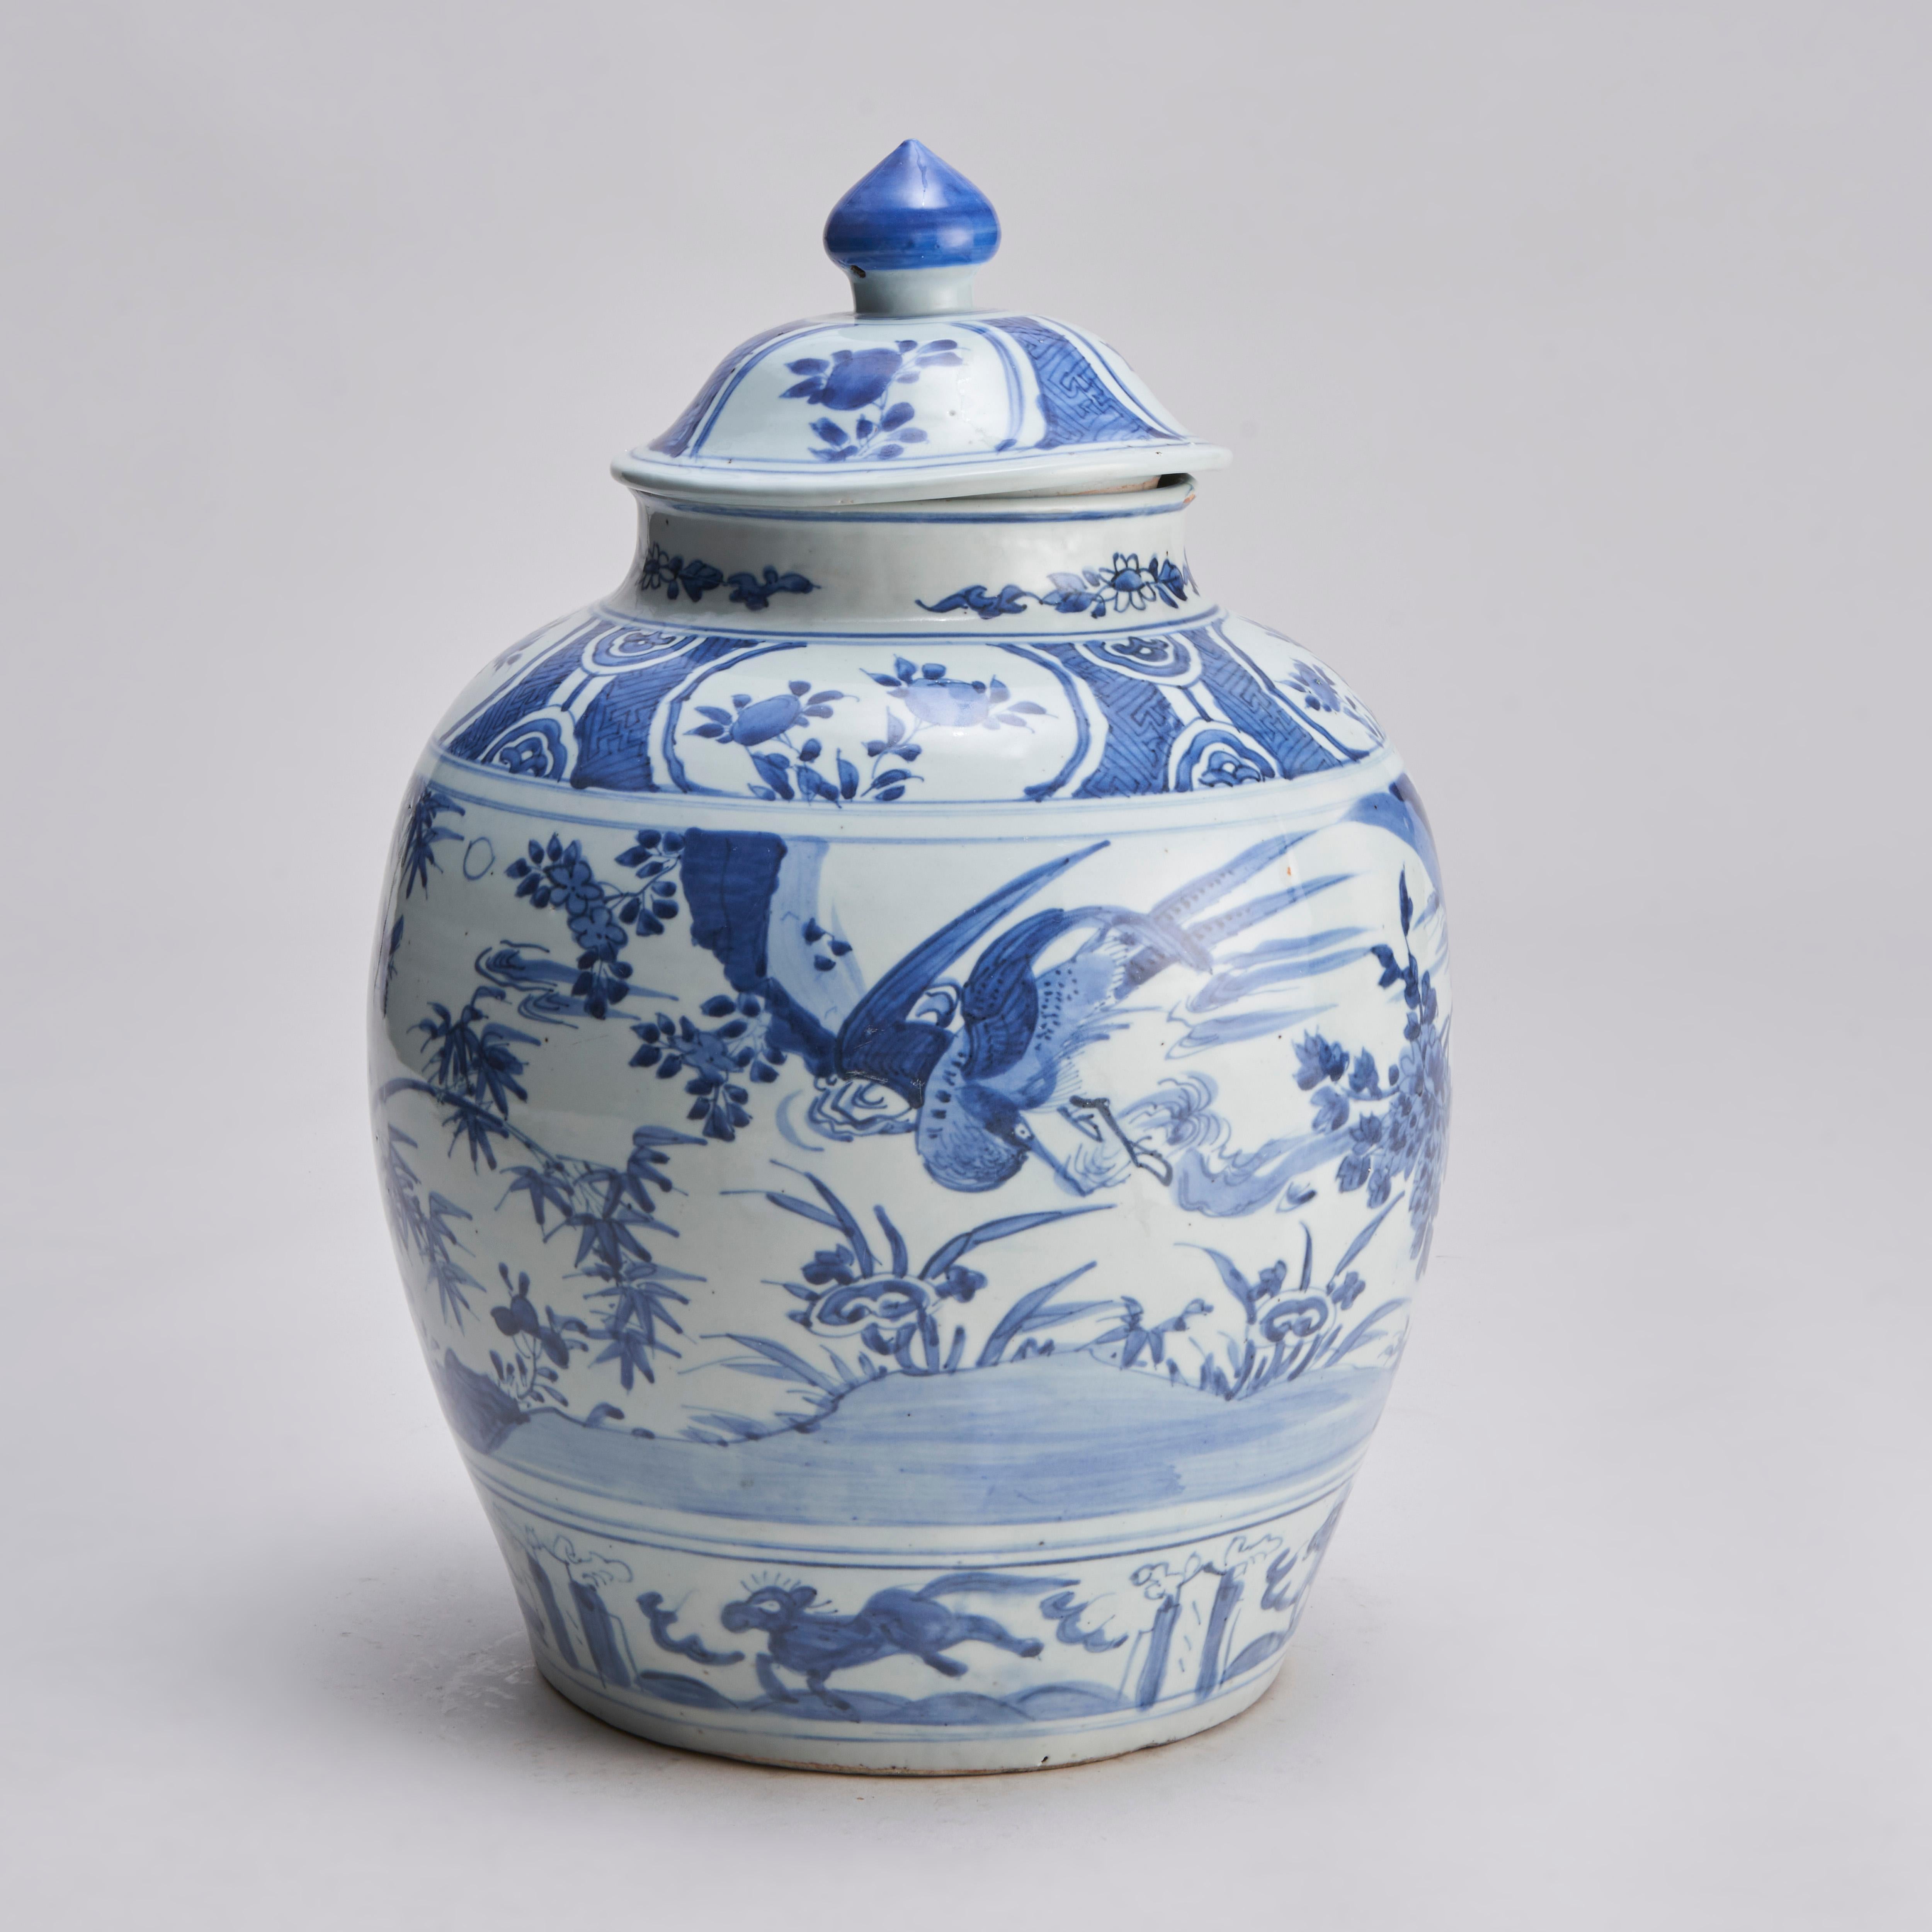 Aus unserer Sammlung von antikem chinesischem Porzellan, dieser chinesische blau-weiße Krug und Deckel aus dem frühen 19. Jahrhundert mit umlaufendem Dekor von Fasanen zwischen Pfingstrosen und Bambus, der untere Rand mit einem Muster von